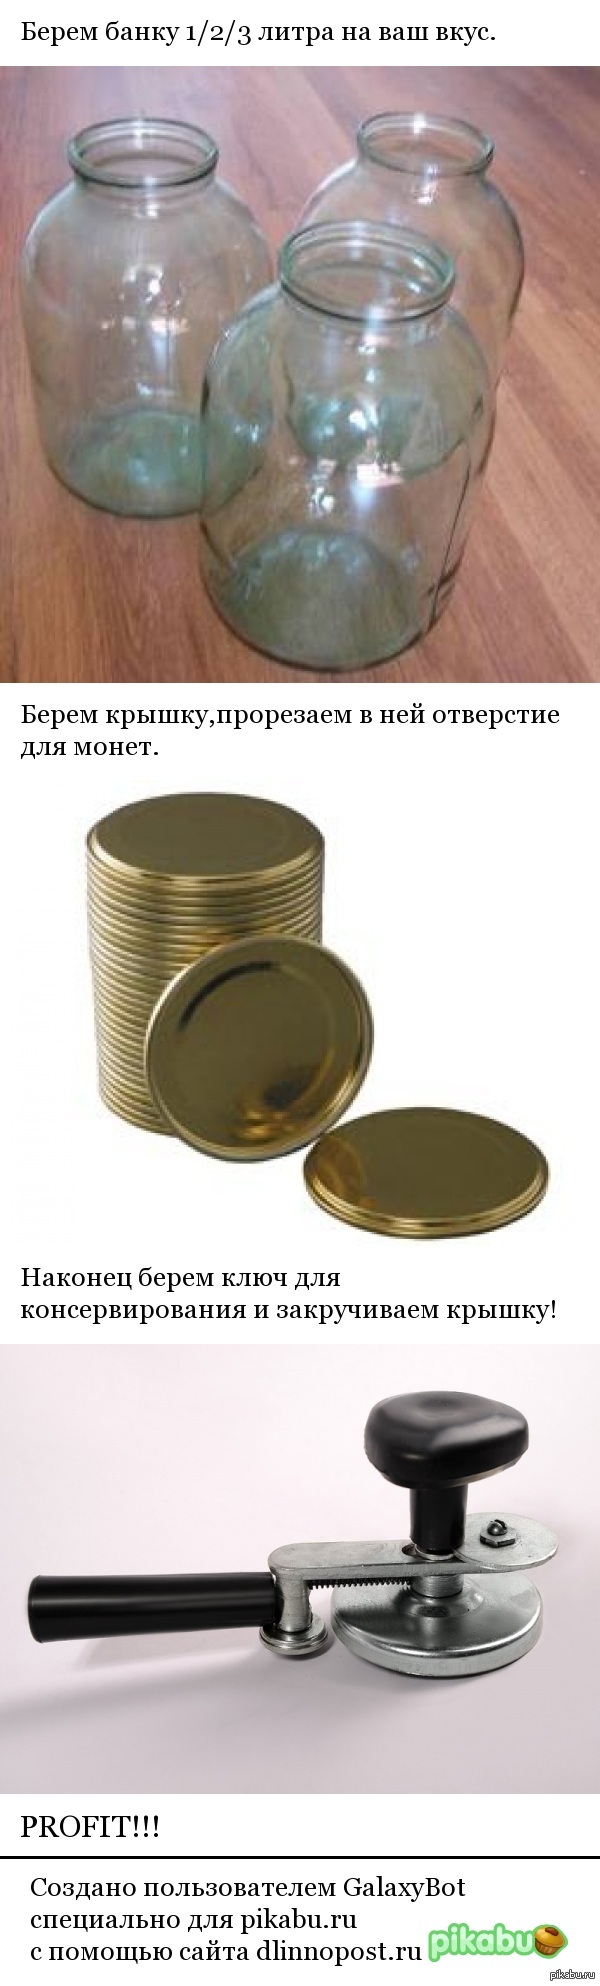   180     ebay?   <a href="http://pikabu.ru/story/kopilka_dlya_monet_2427734">http://pikabu.ru/story/_2427734</a>